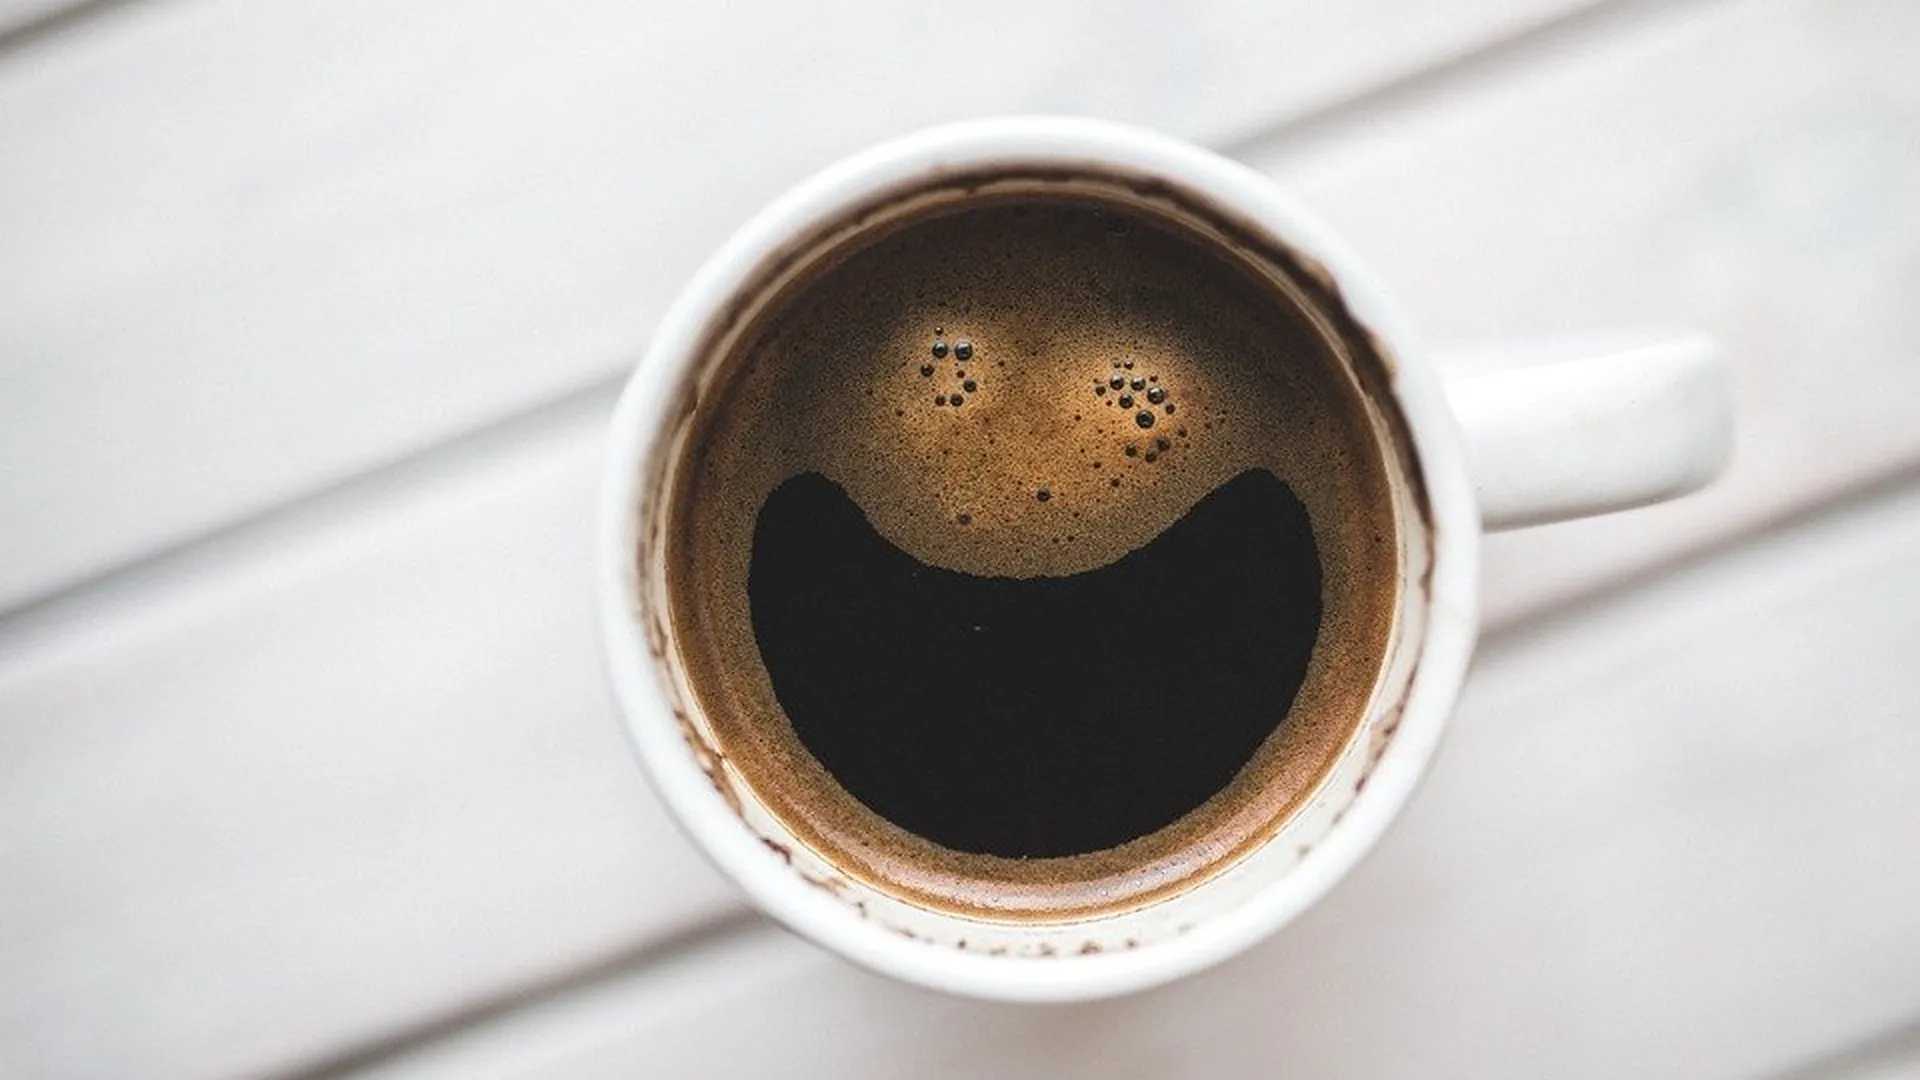 Специалисты «Росконтроля» назвали марку лучшего растворимого кофе